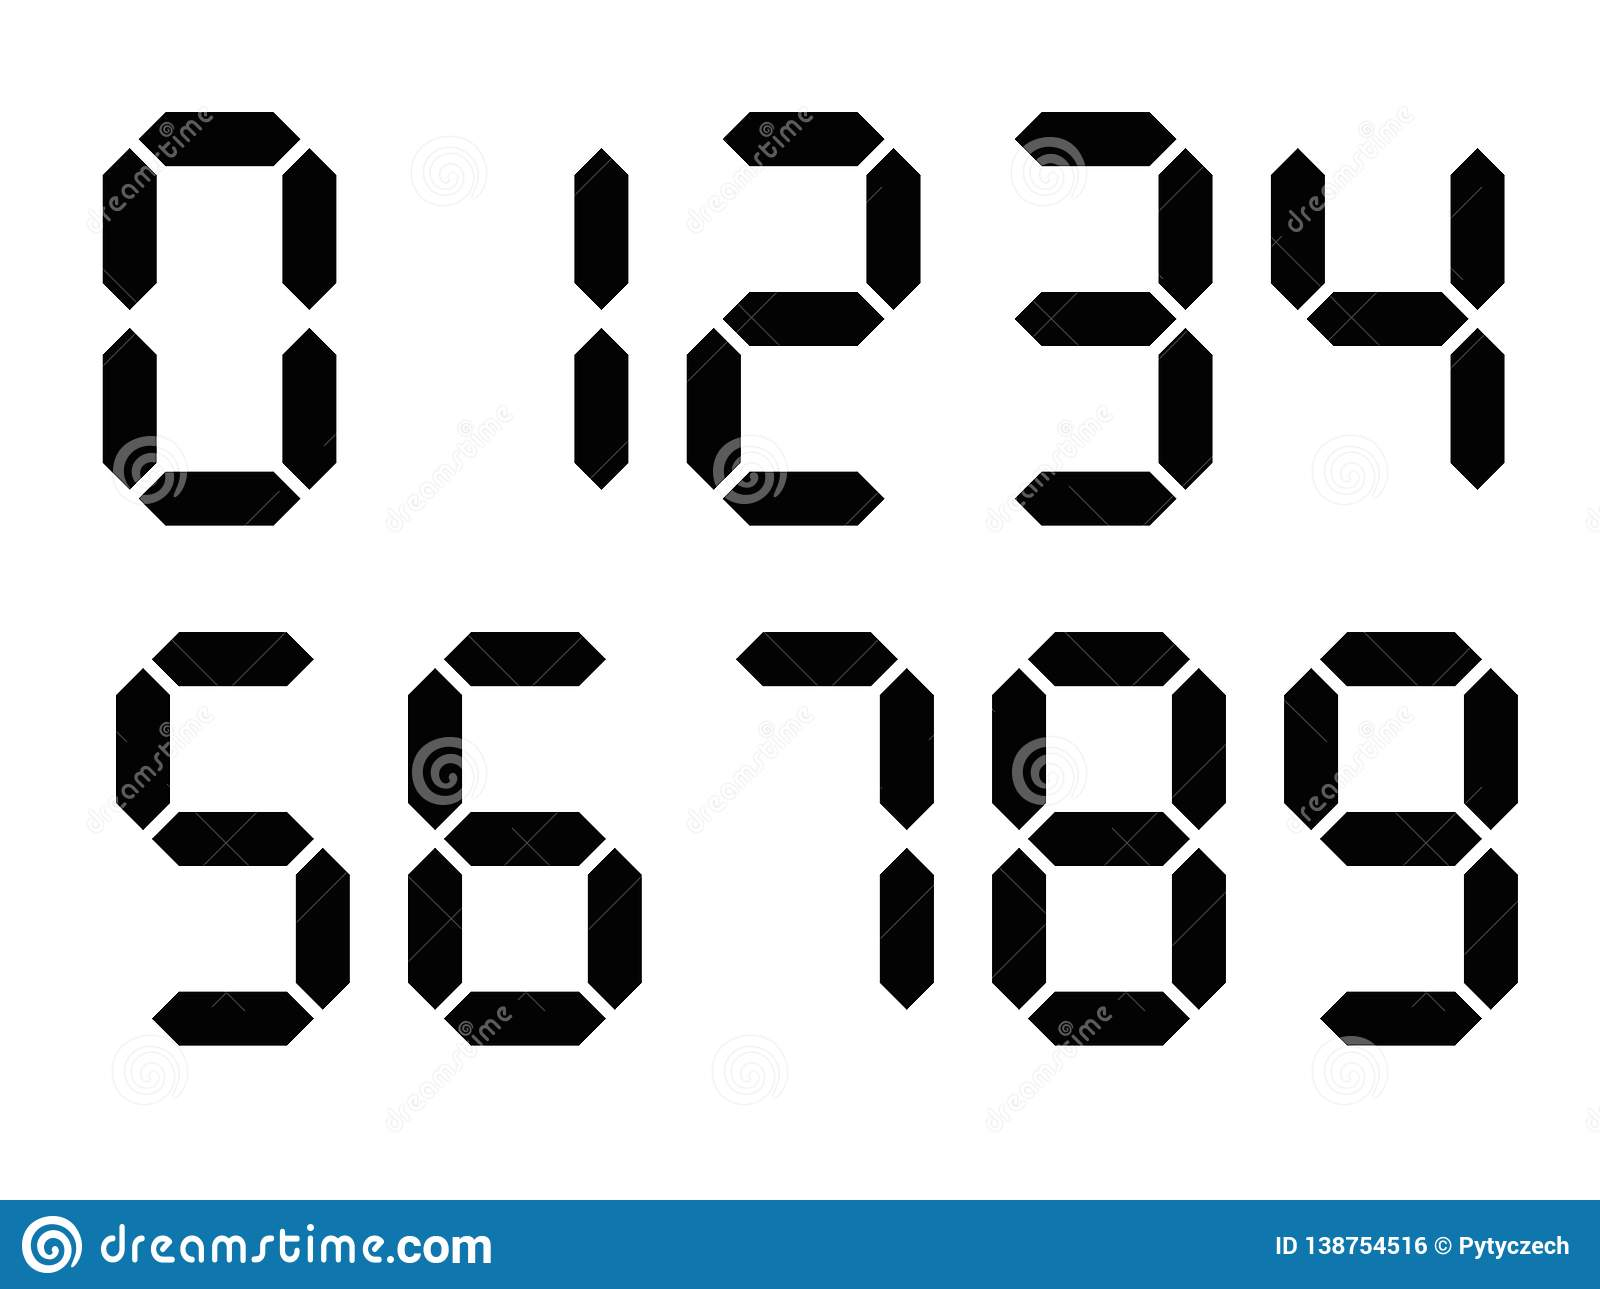 Black Digital Numbers Seven segment Display Is Used In 